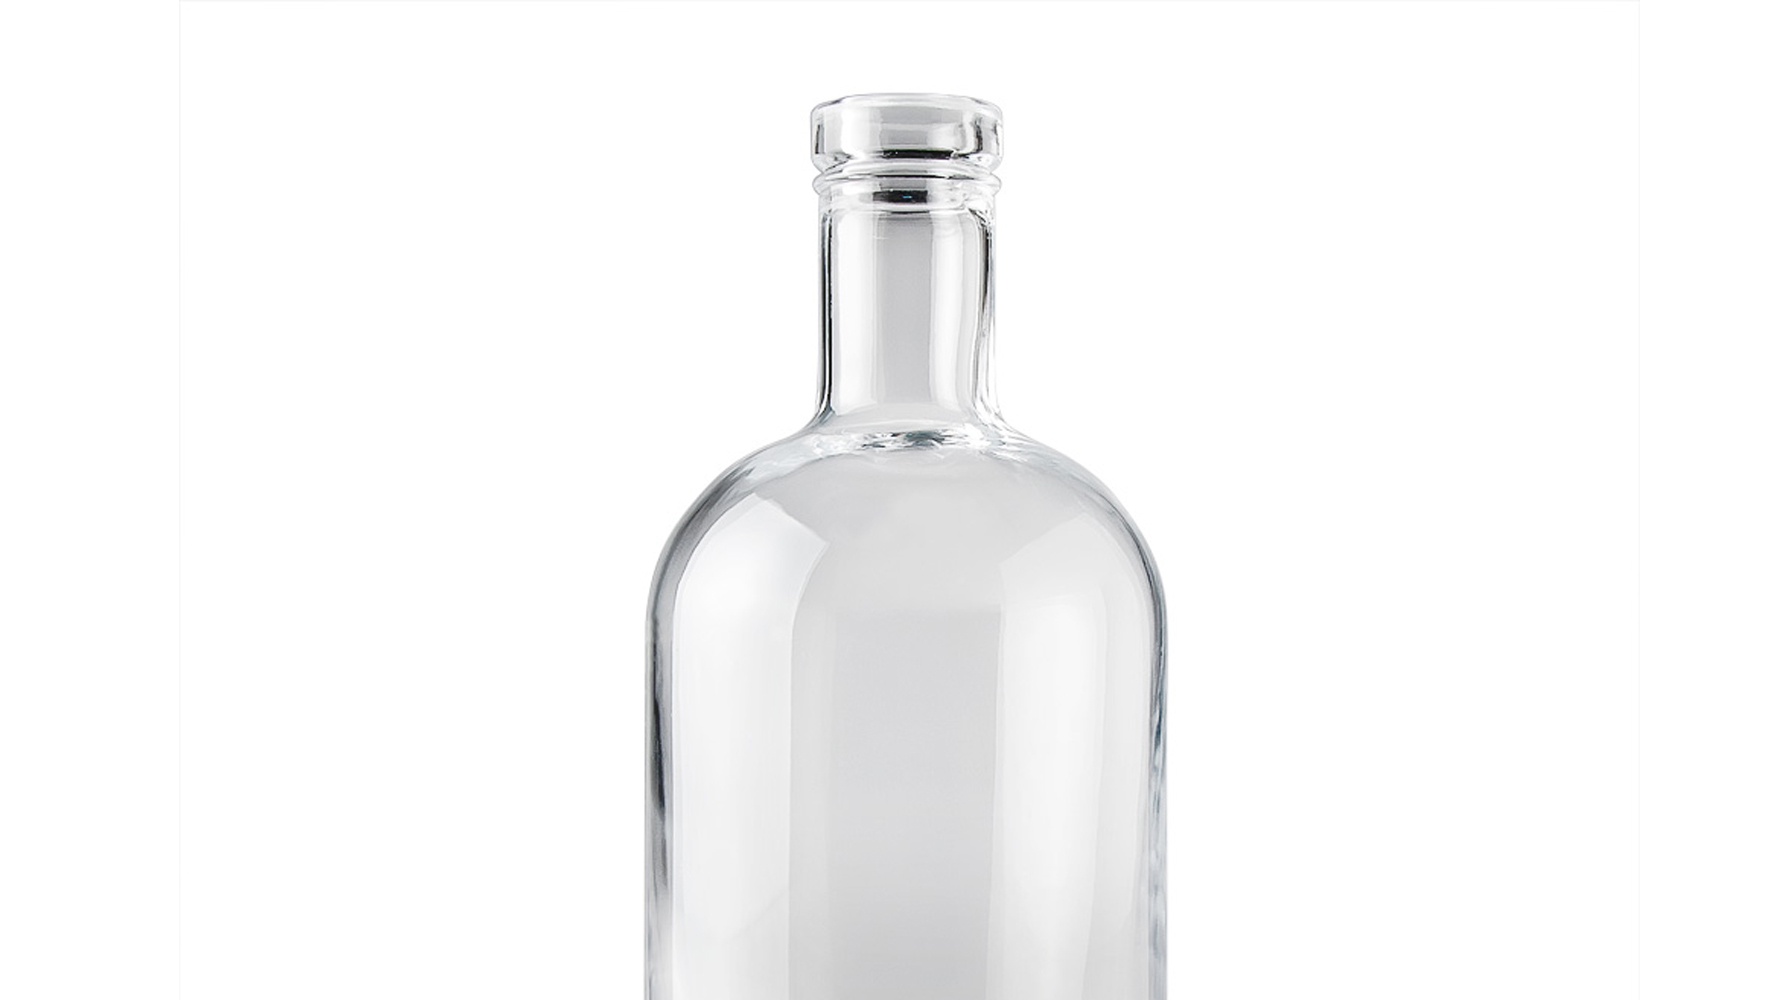 clear glass liquor bottle for premium spirits